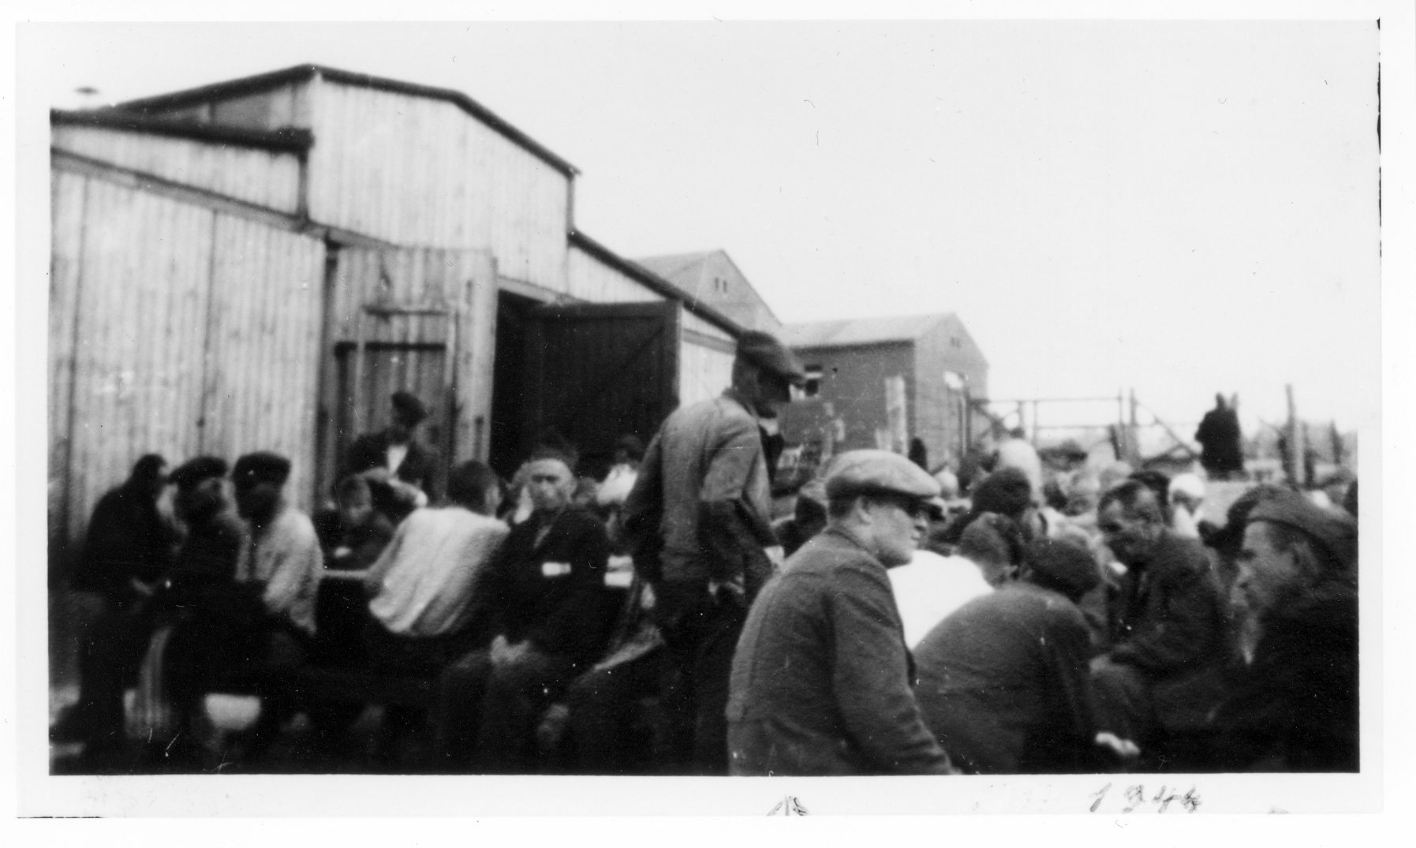 Häftlinge des Kleinen Lagers sitzen und stehen vor einer Pferdestallbaracke, dahinter zwei größere Steingebäude. Auf dem Bild ist ein geschäftiges Treiben zu erkennen. 